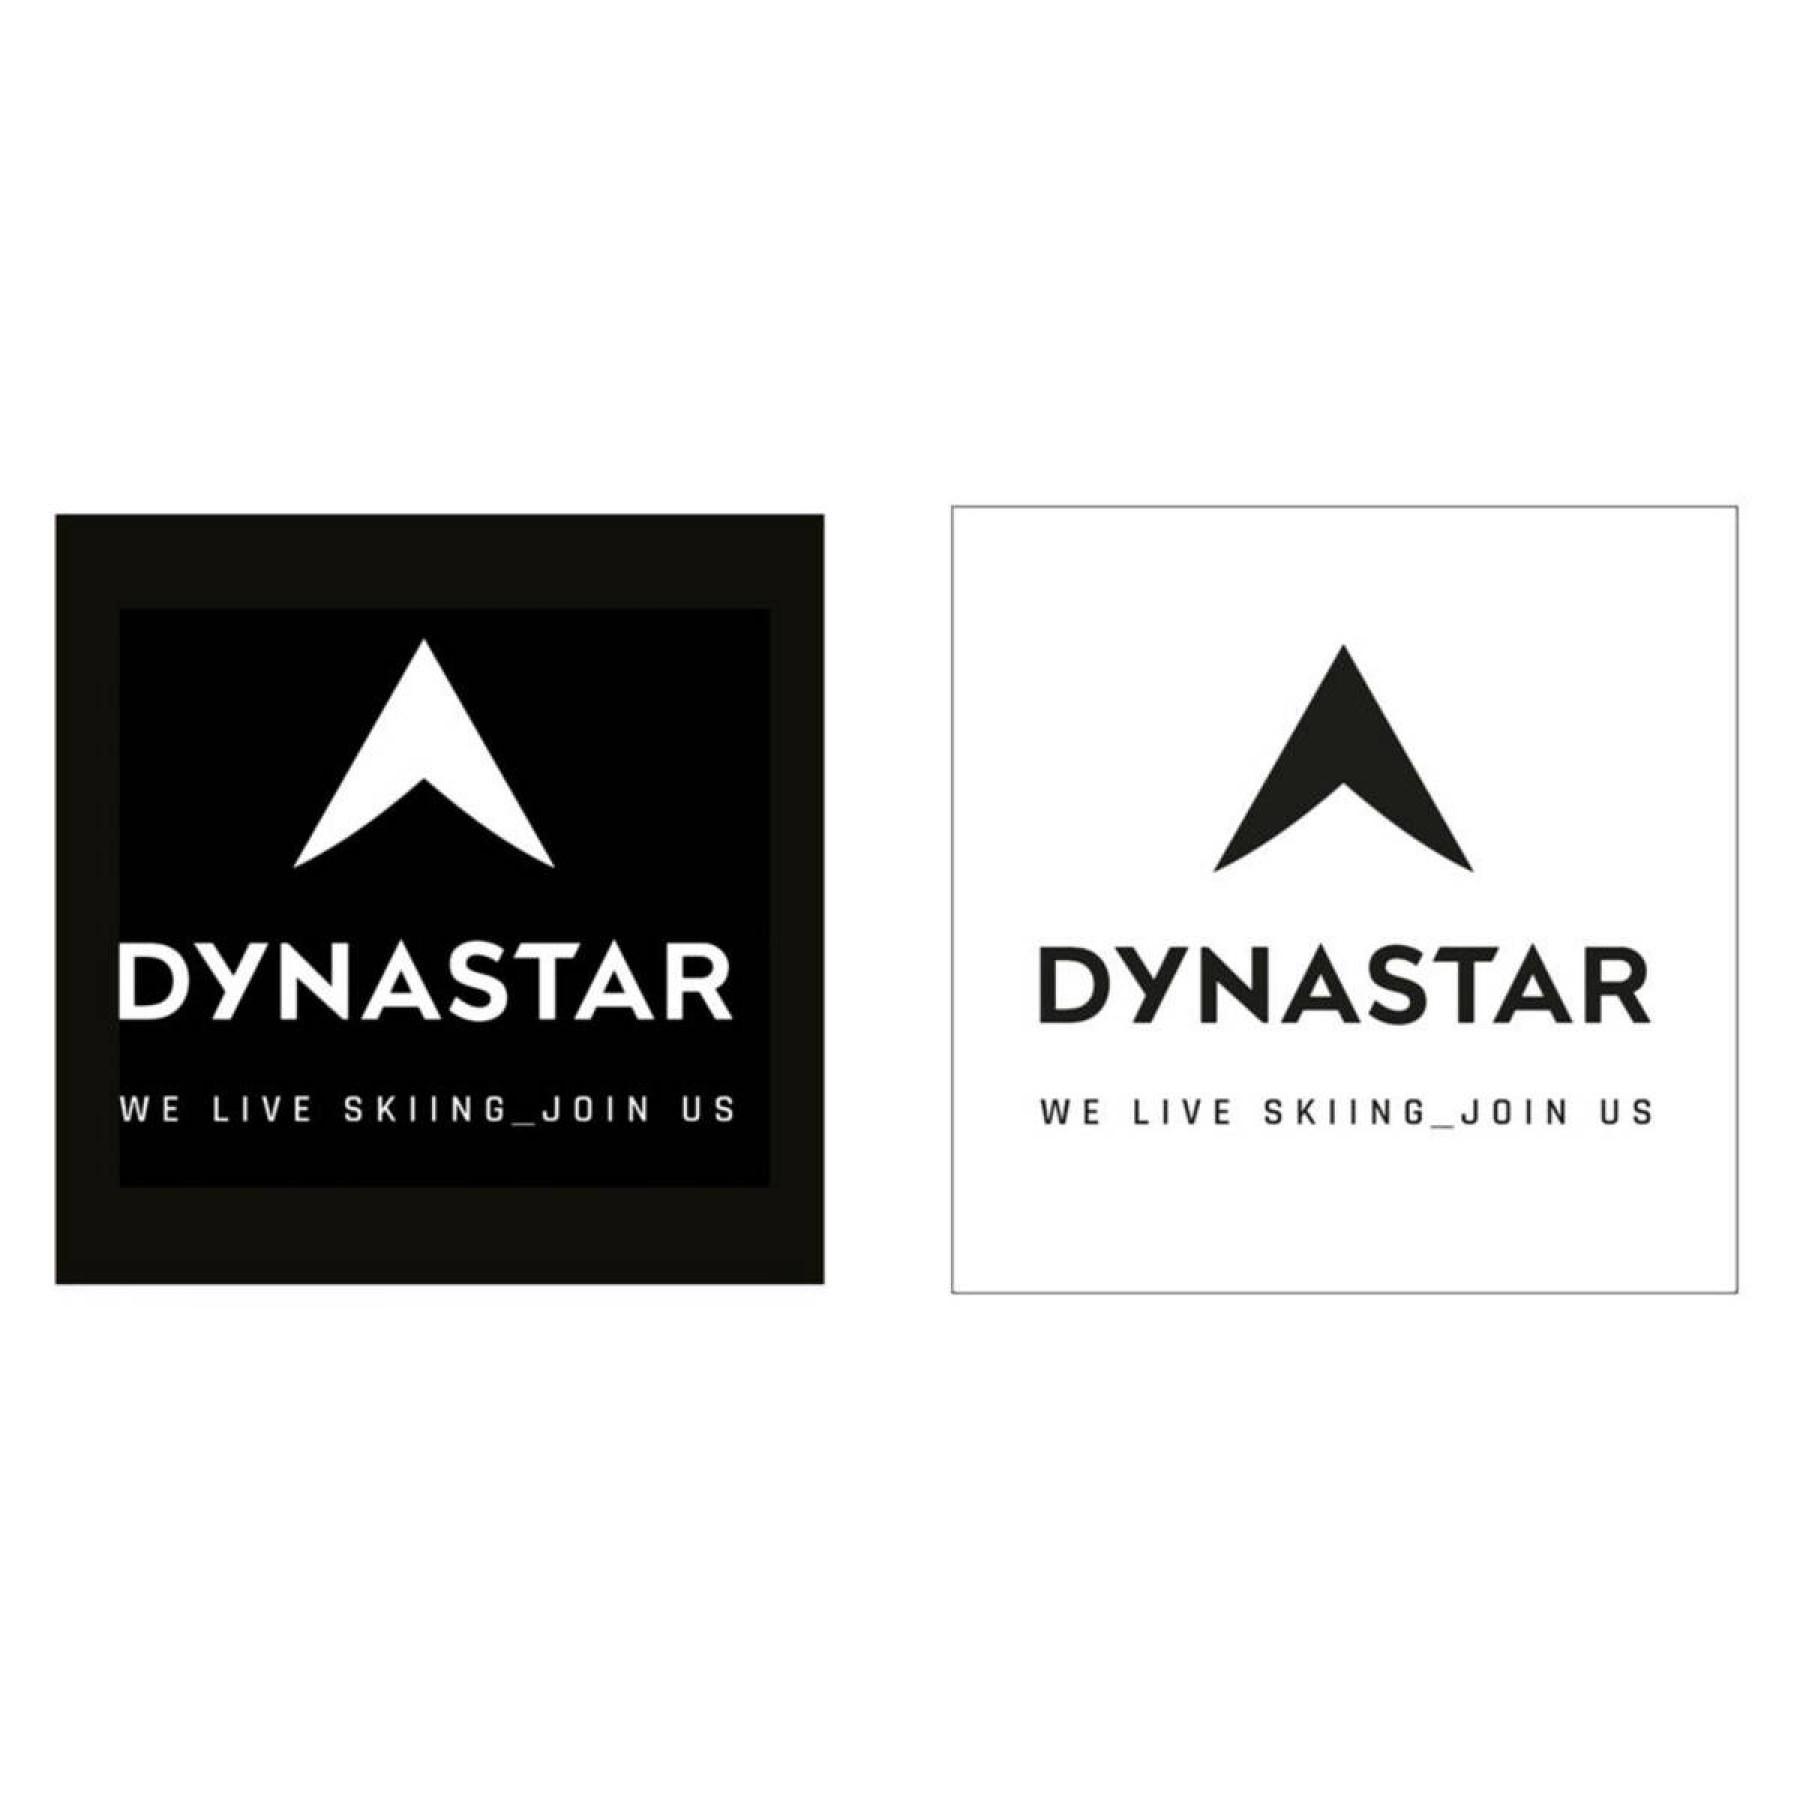 Naklejki Dynastar L10 corporate